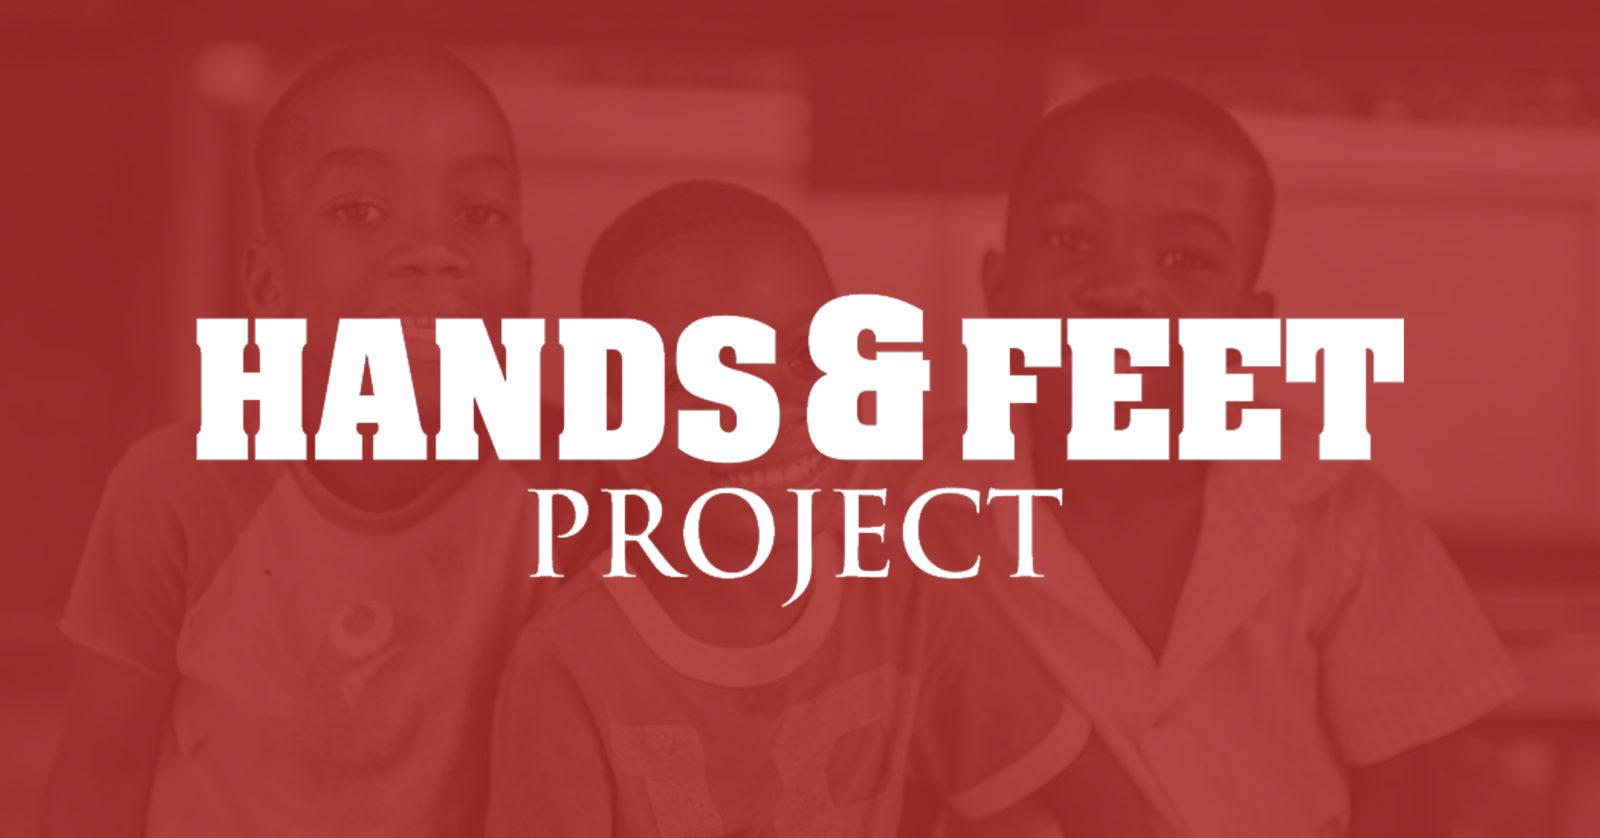 (c) Handsandfeetproject.org